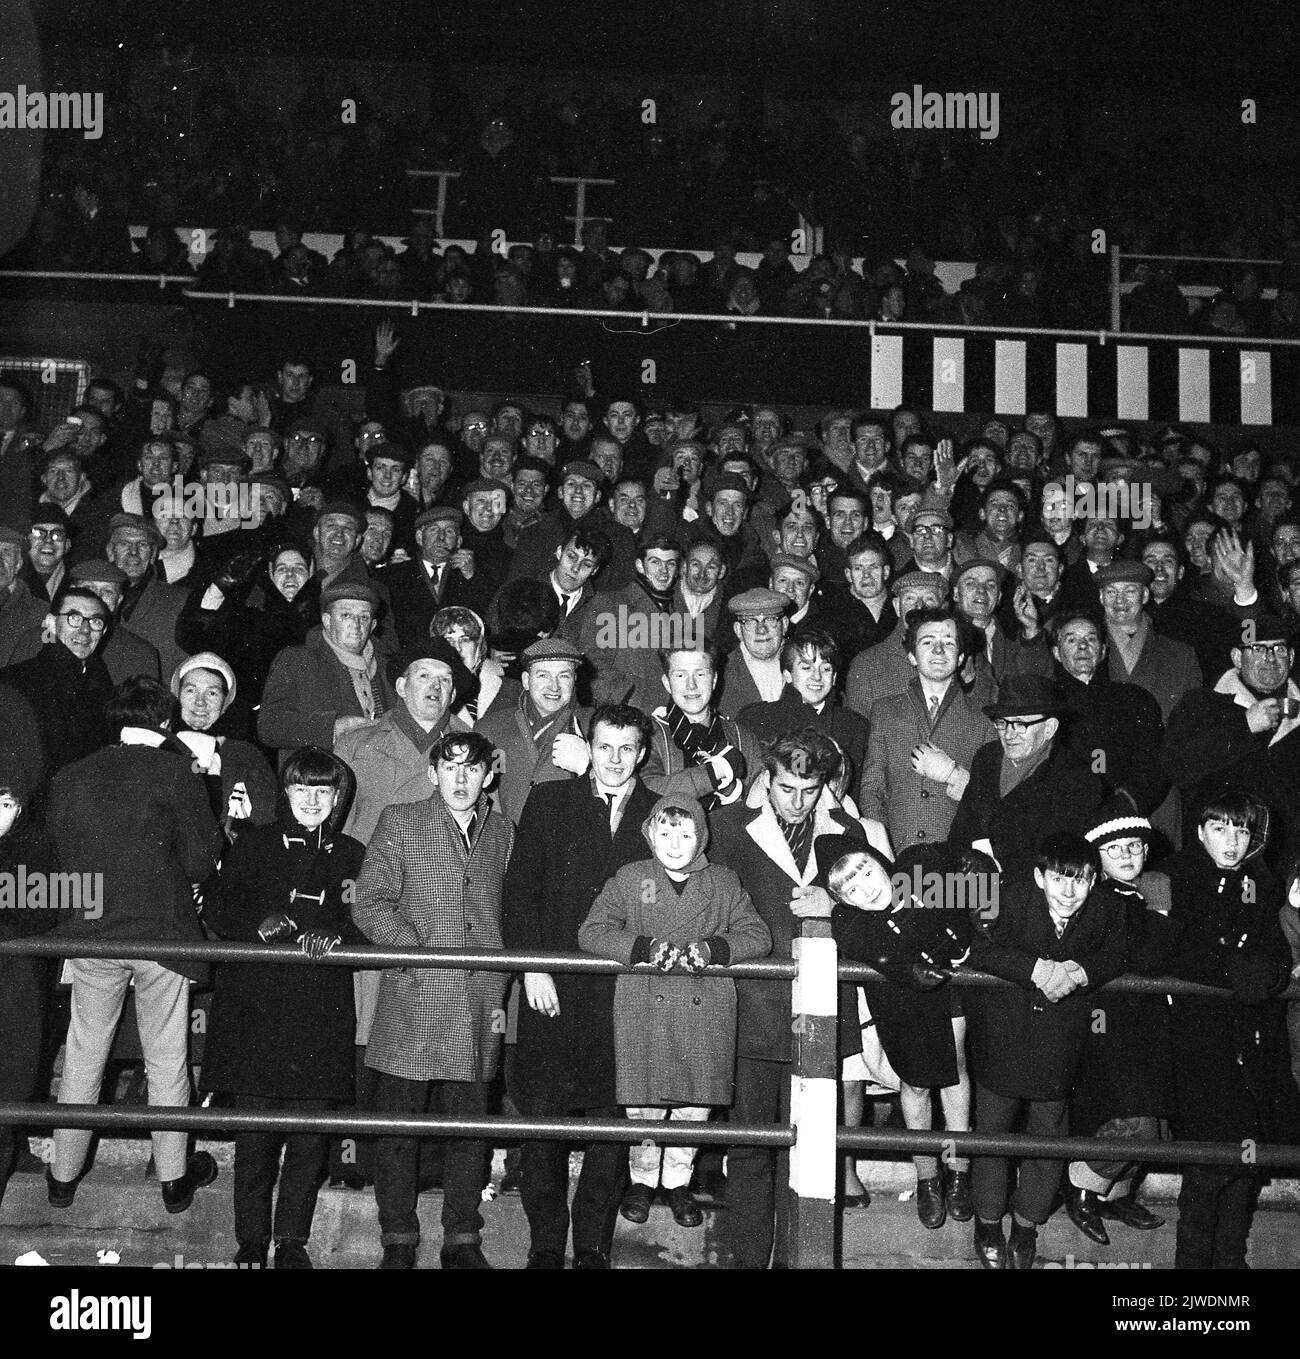 1960s, des fans de football historiques se tenant ensemble sur les terrasses pour un match de soirée... manteaux, casquettes plates pour les hommes, manteaux de sport et chapeaux de galet pour les jeunes, pas une réplique de chemise en vue! Banque D'Images